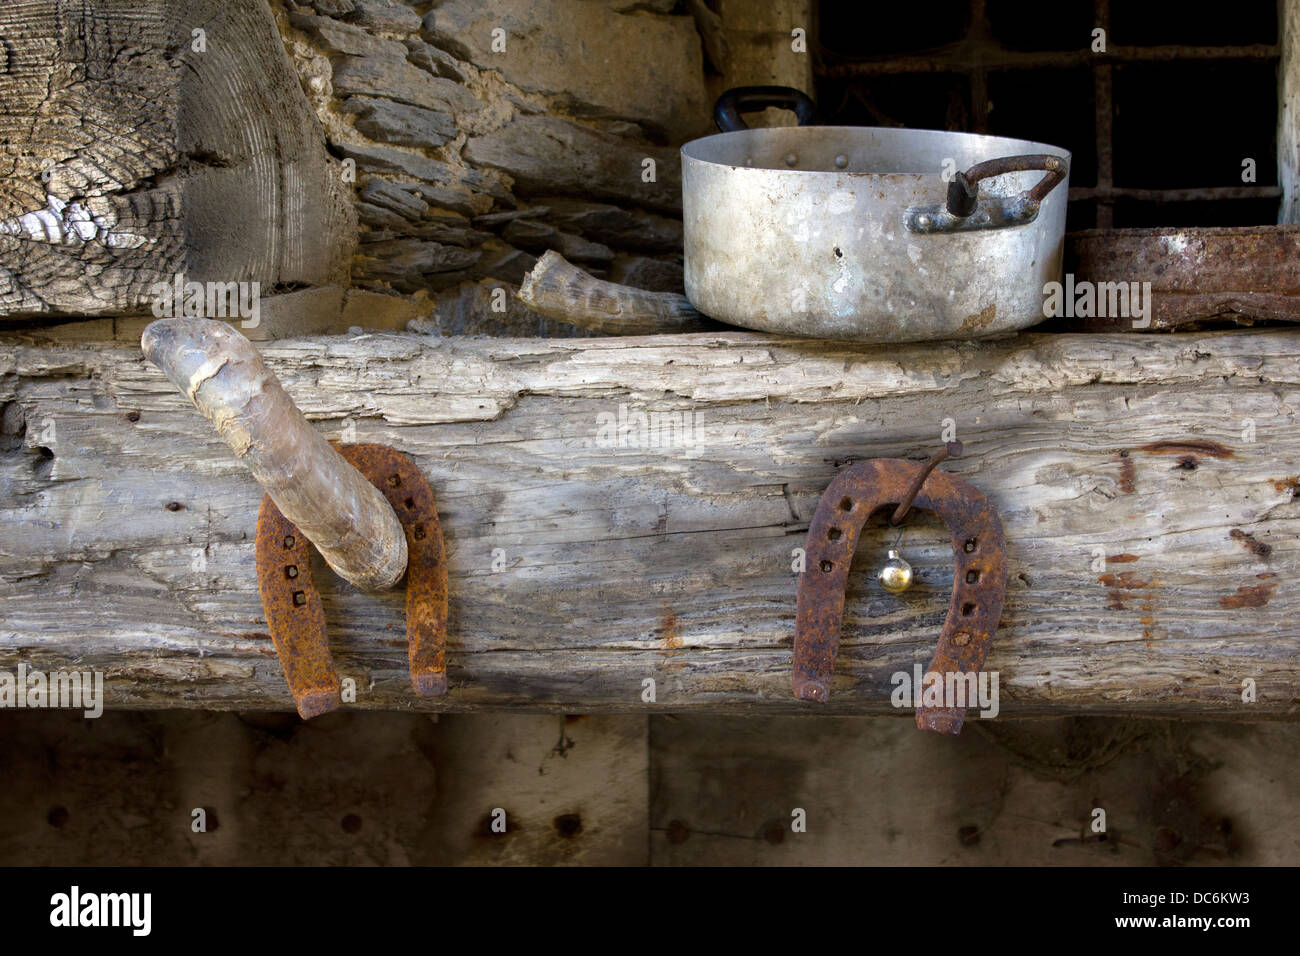 Horse Shoe, corne et vieux pots sur une poutre en bois Banque D'Images